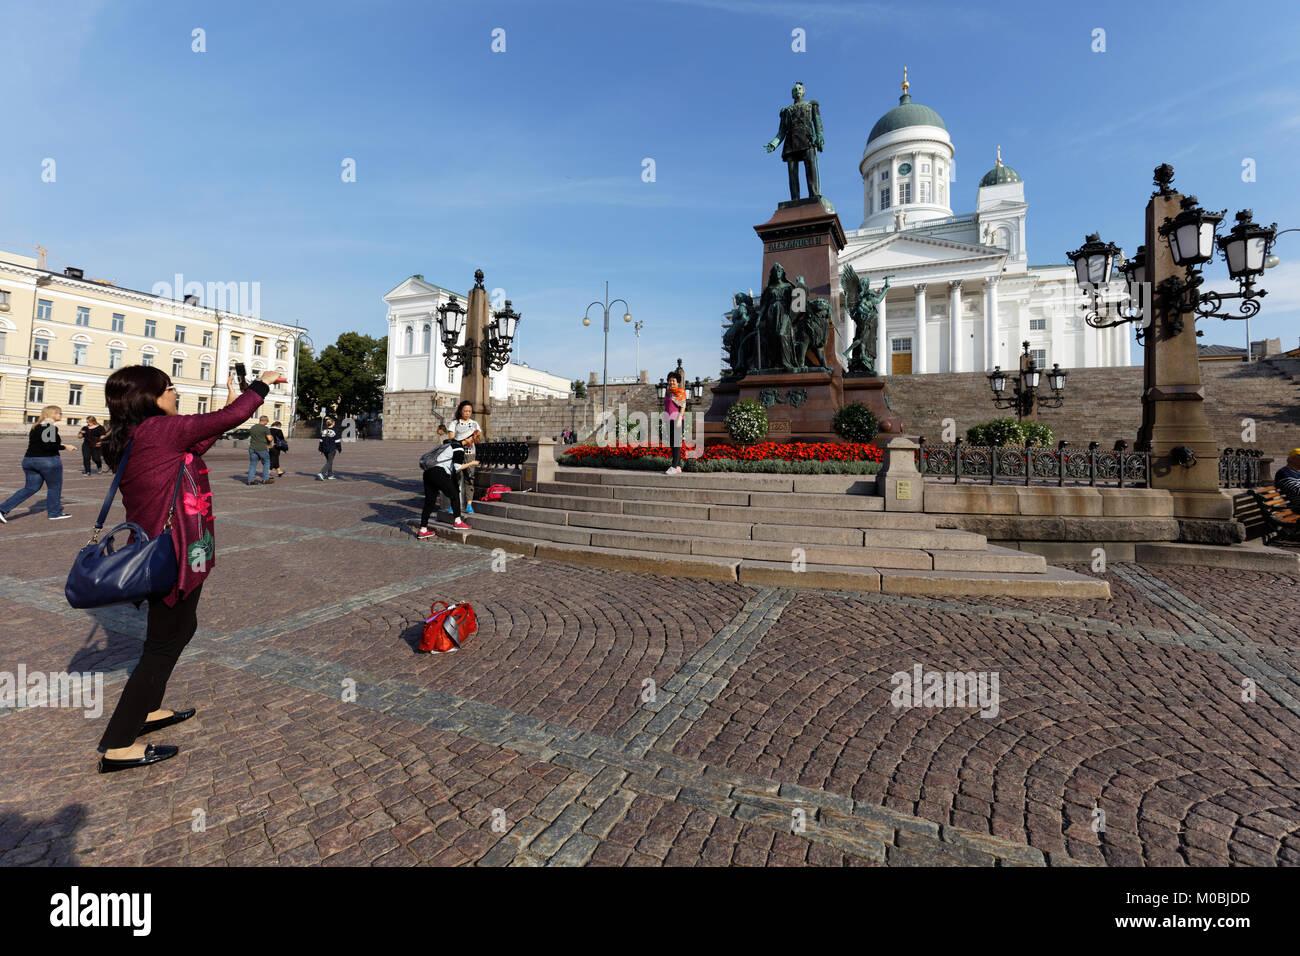 Helsinki, Finlandia - 21 agosto 2016: turisti cinesi fare foto contro la statua dell'imperatore russo Alessandro II sulla Piazza del Senato. La statua, ere Foto Stock